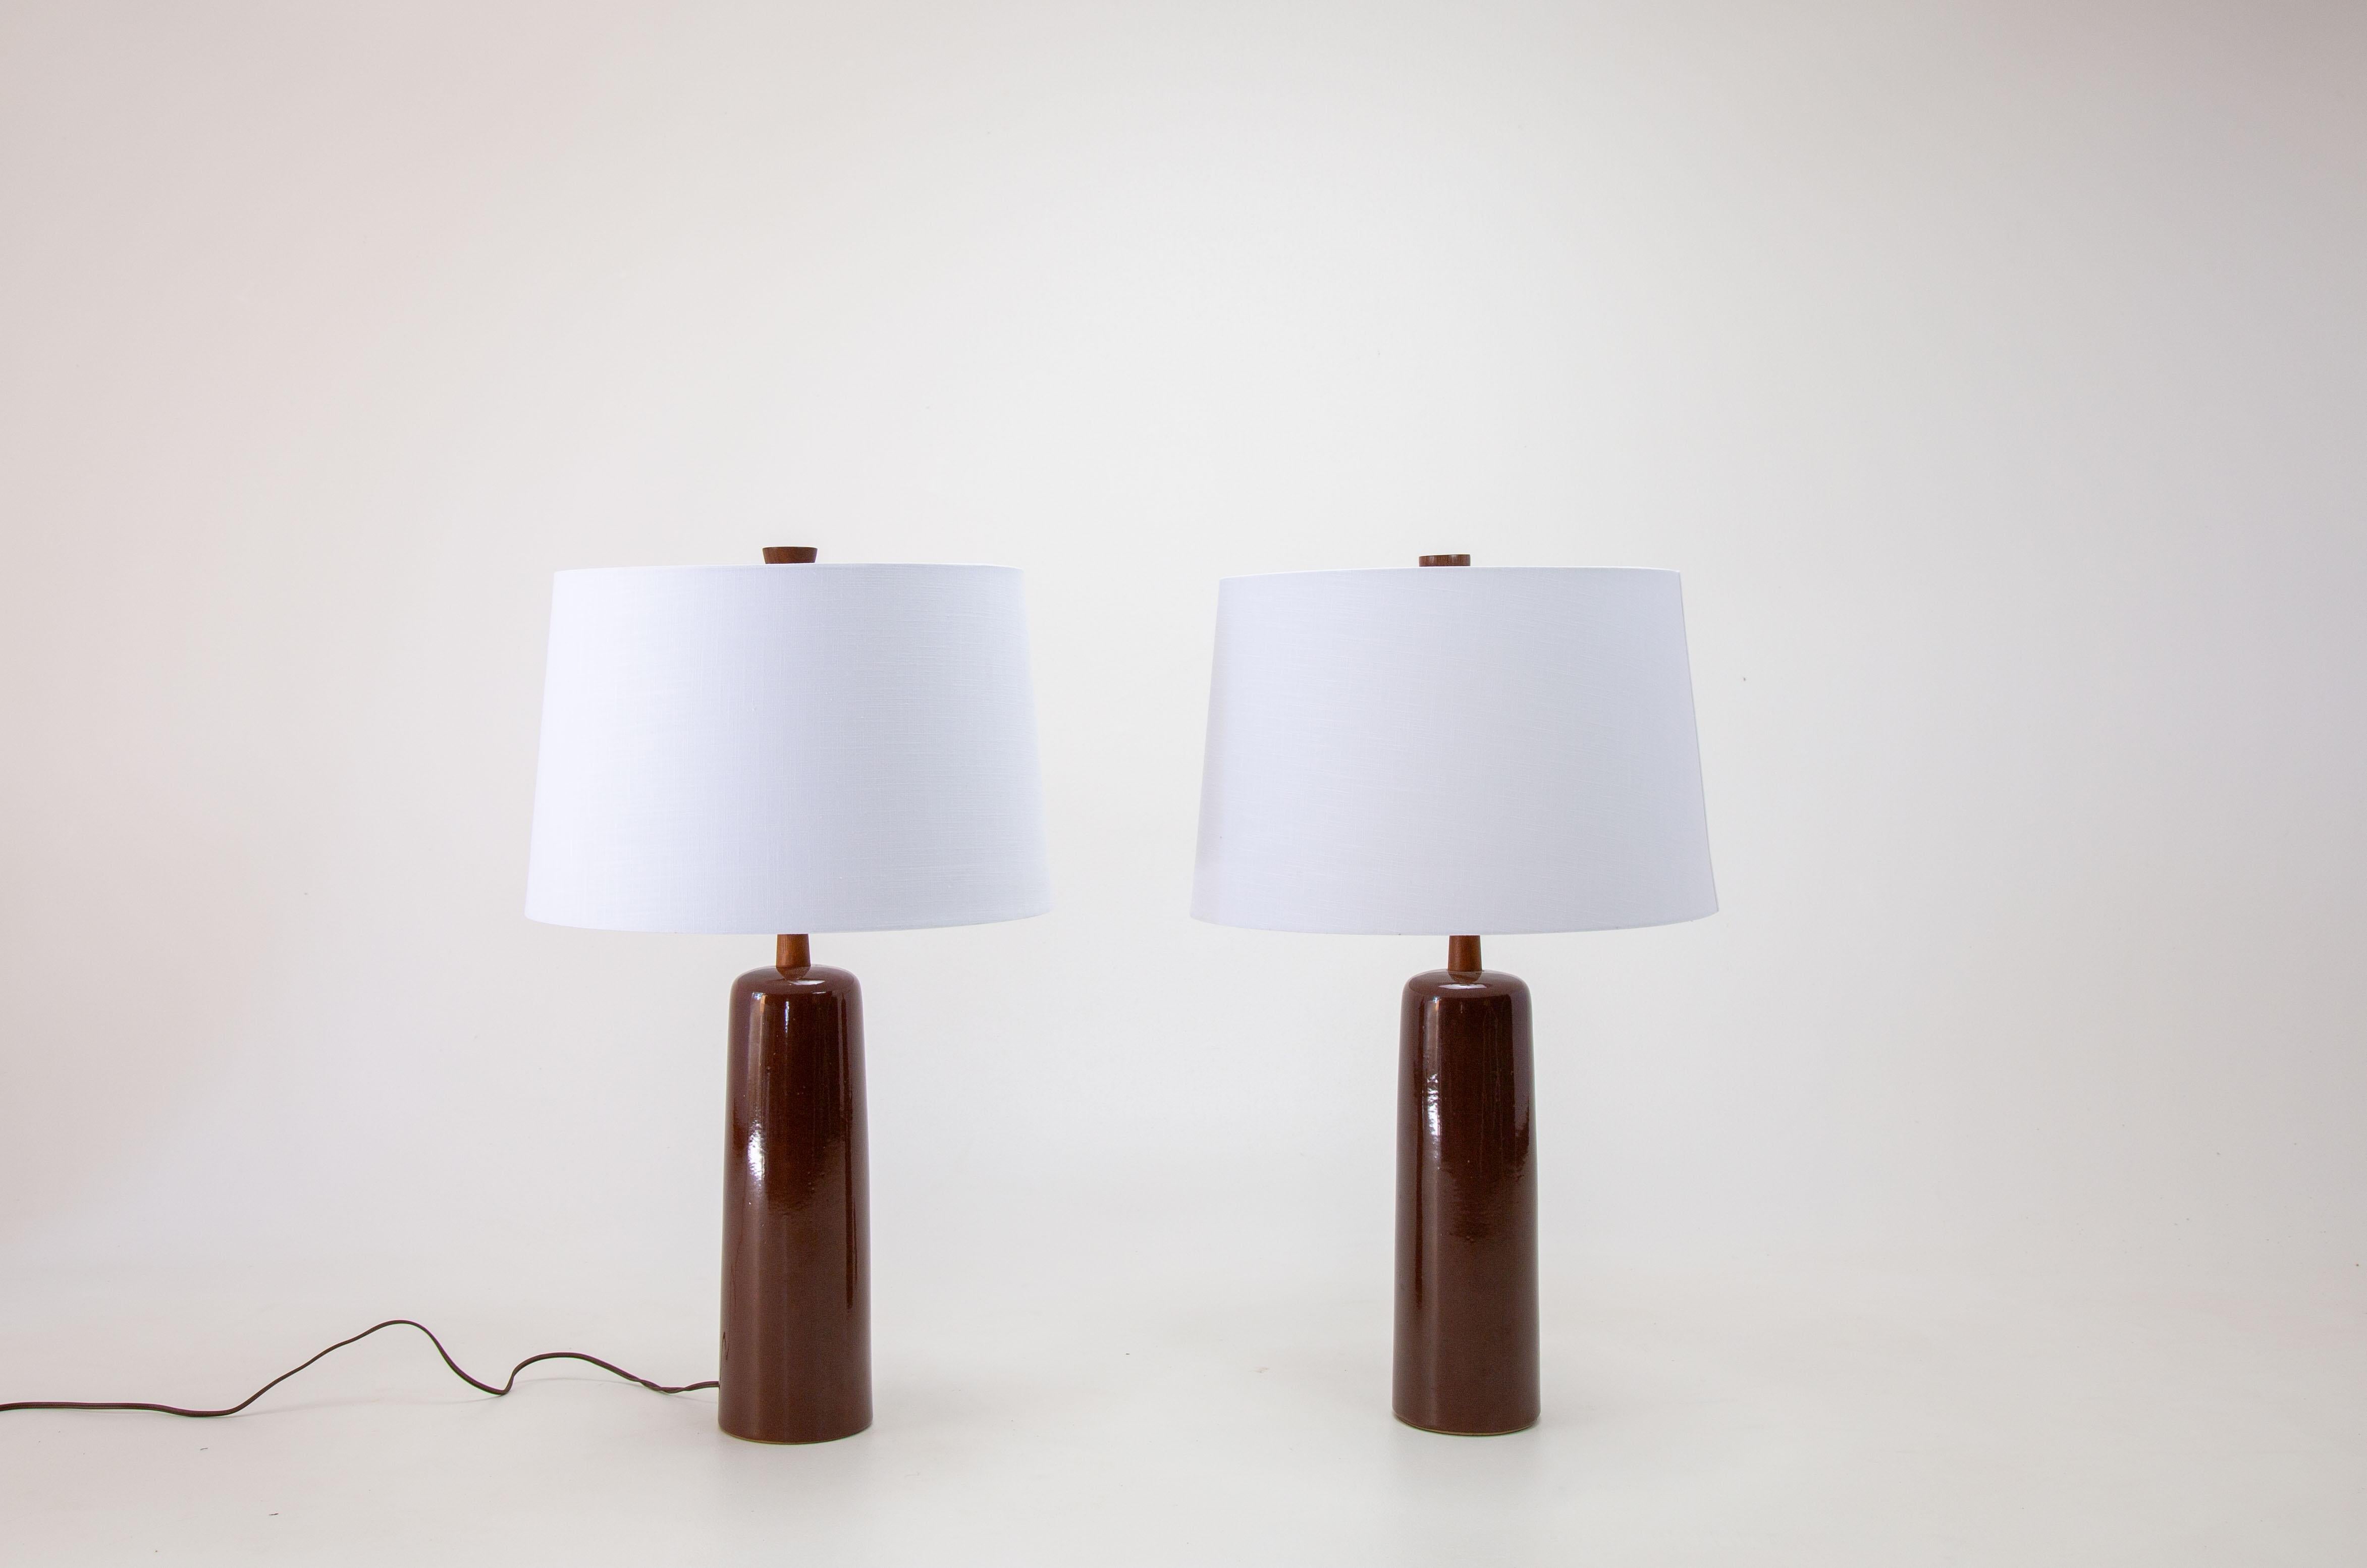 Paire de lampes de table des années 1960, de grande collection, conçues par Jane et Gordon Martz des Marshall Studios à Veedersburg (Indiana). Ces lampes sont très recherchées et apparaissent dans les designs du monde entier. Alliant sophistication